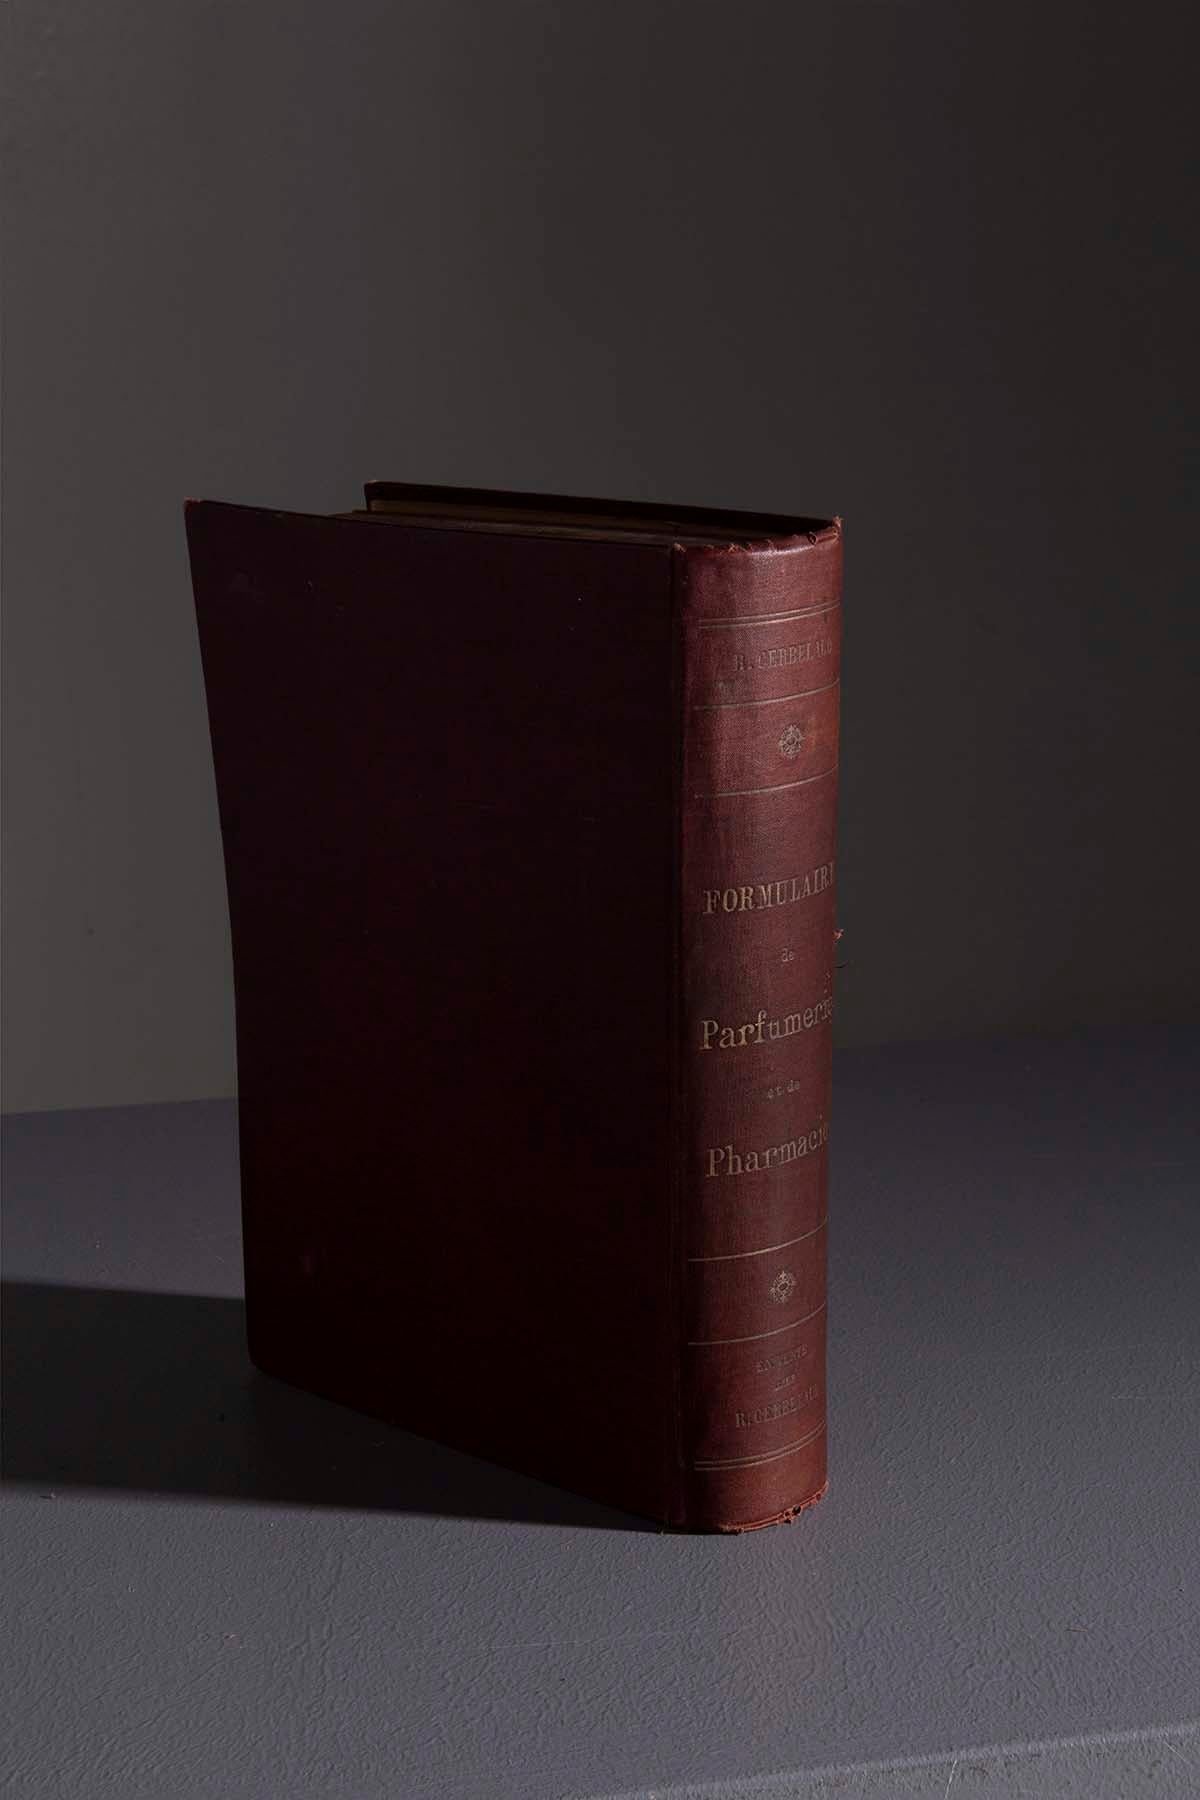 Wir laden Sie zu einer zeitlosen Entdeckungsreise ein, auf der wir ein echtes Relikt aus der Vergangenheit enthüllen: Das seltene Buch von René Cerbelaud aus dem Jahre 1909. Dieses außergewöhnliche Werk mit dem Titel 